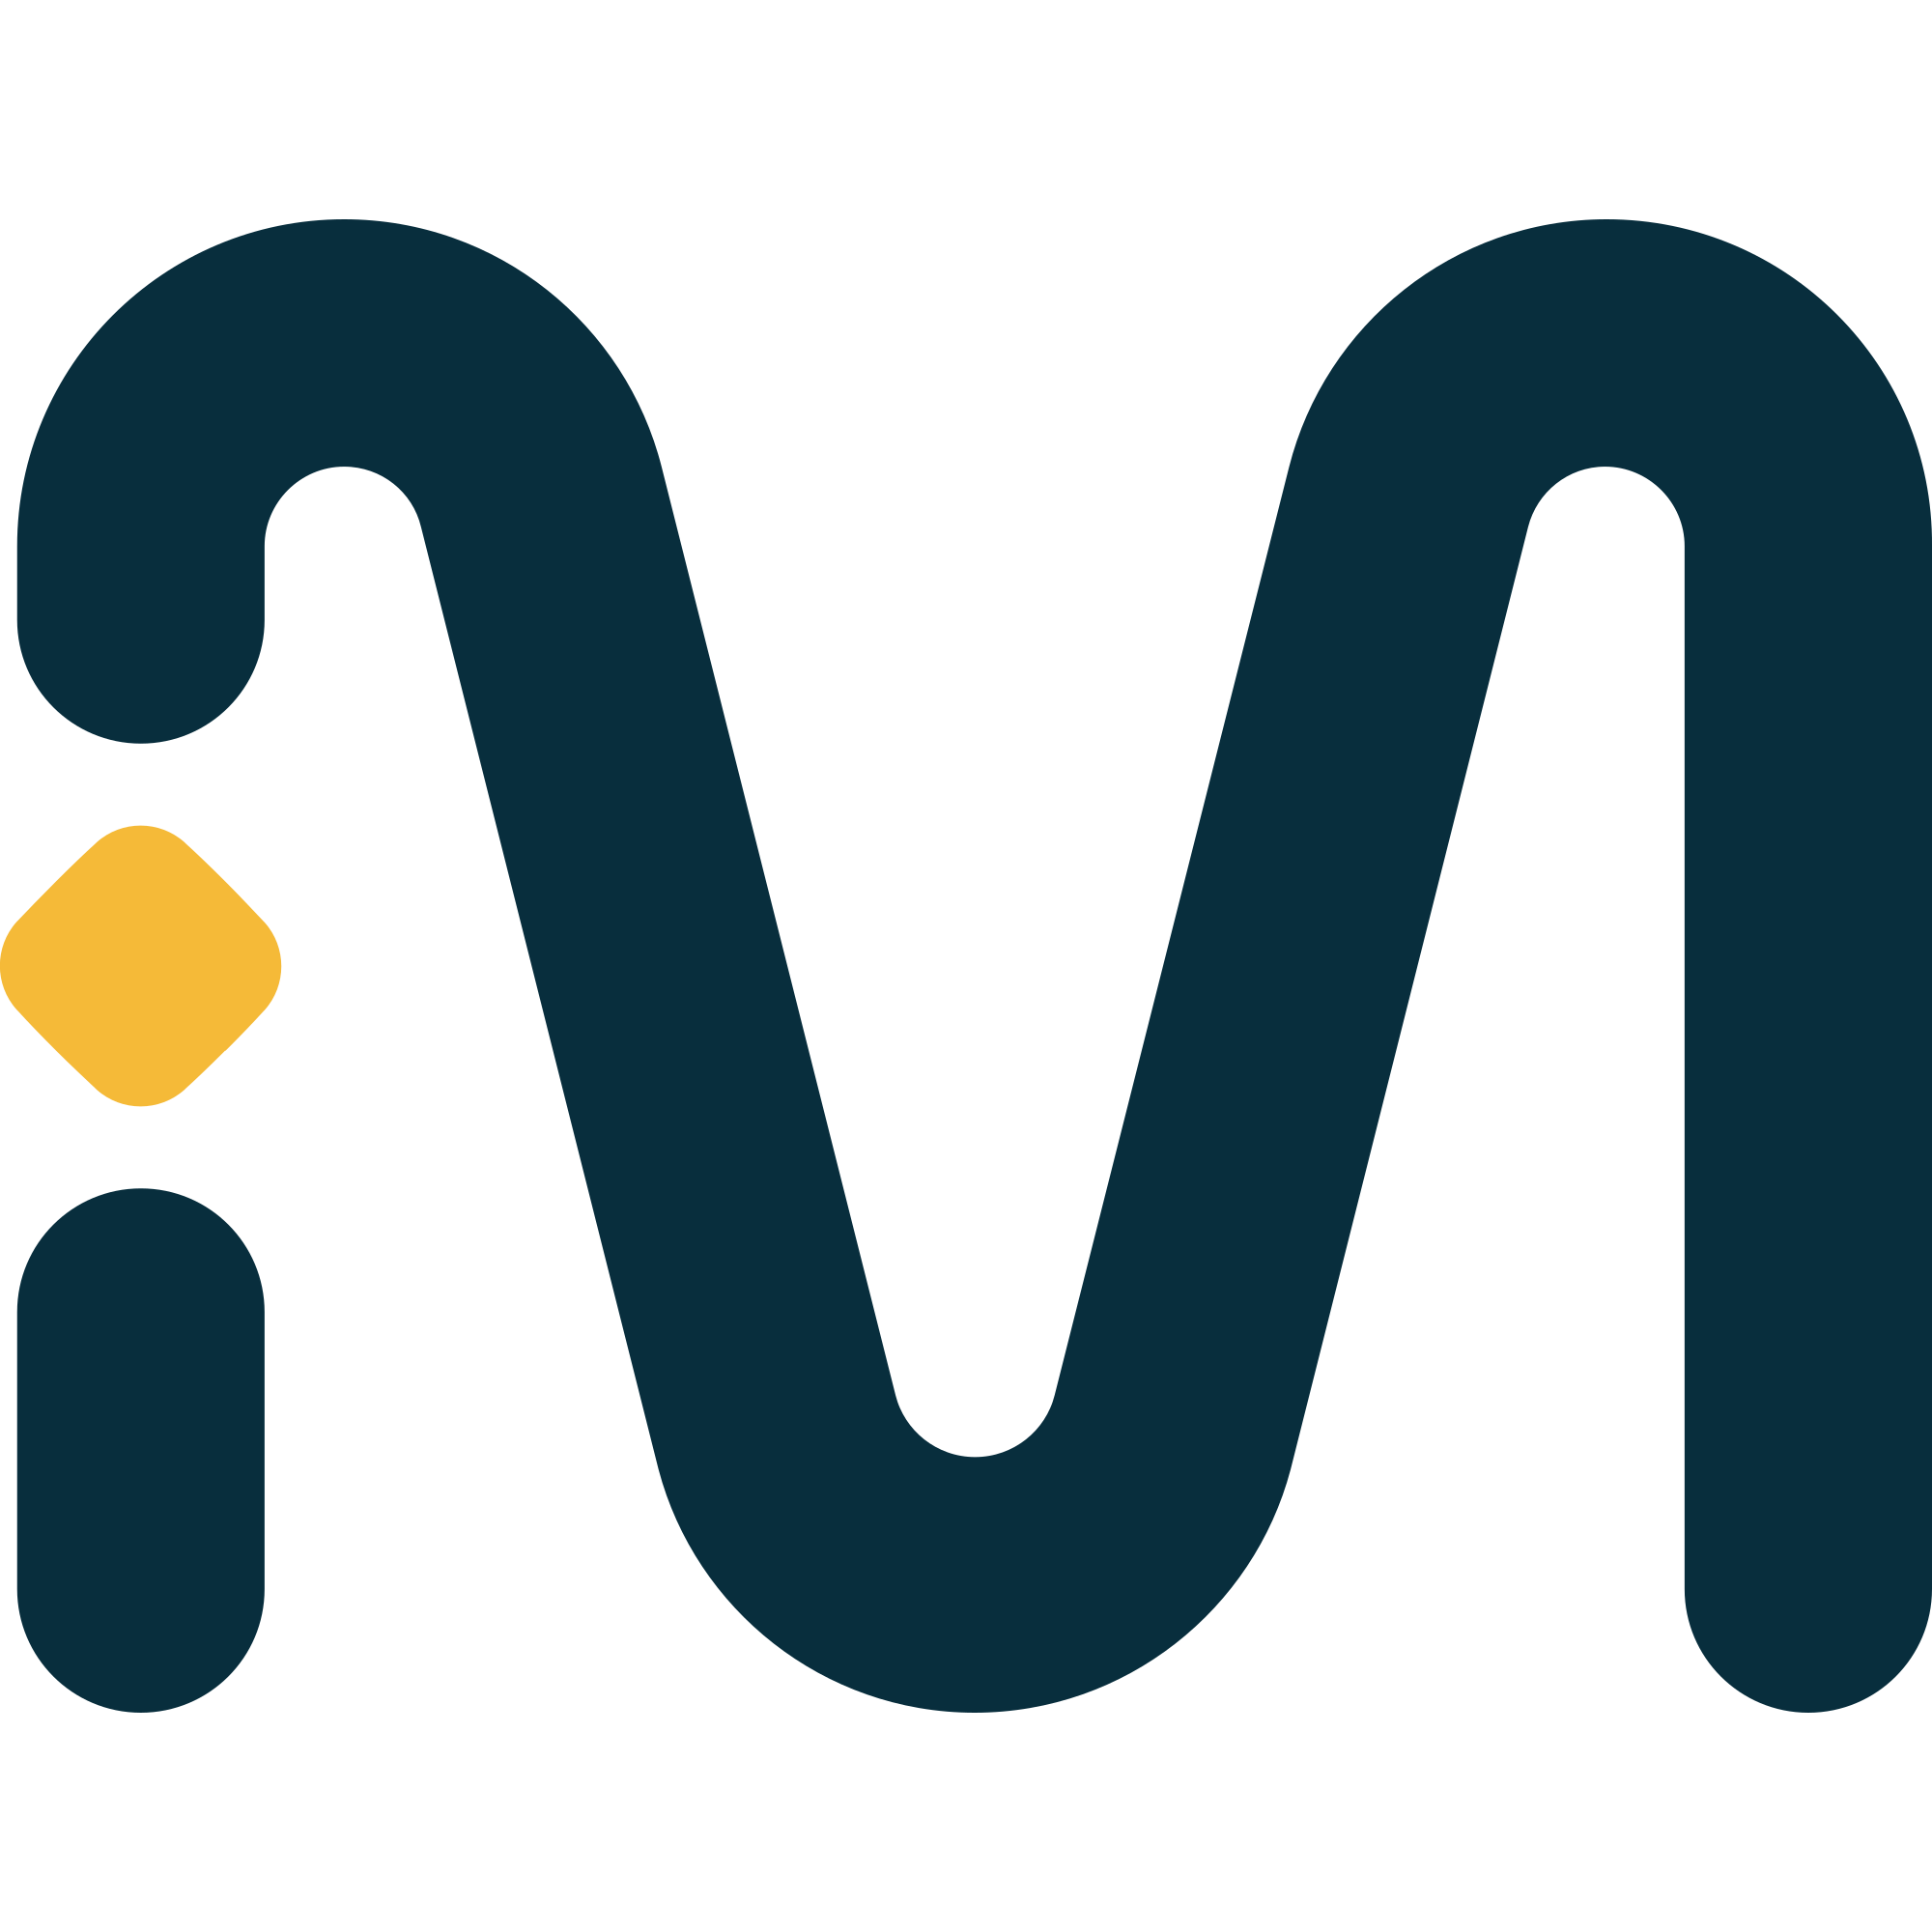 MVL (MVL) Logo .SVG and .PNG Files Download